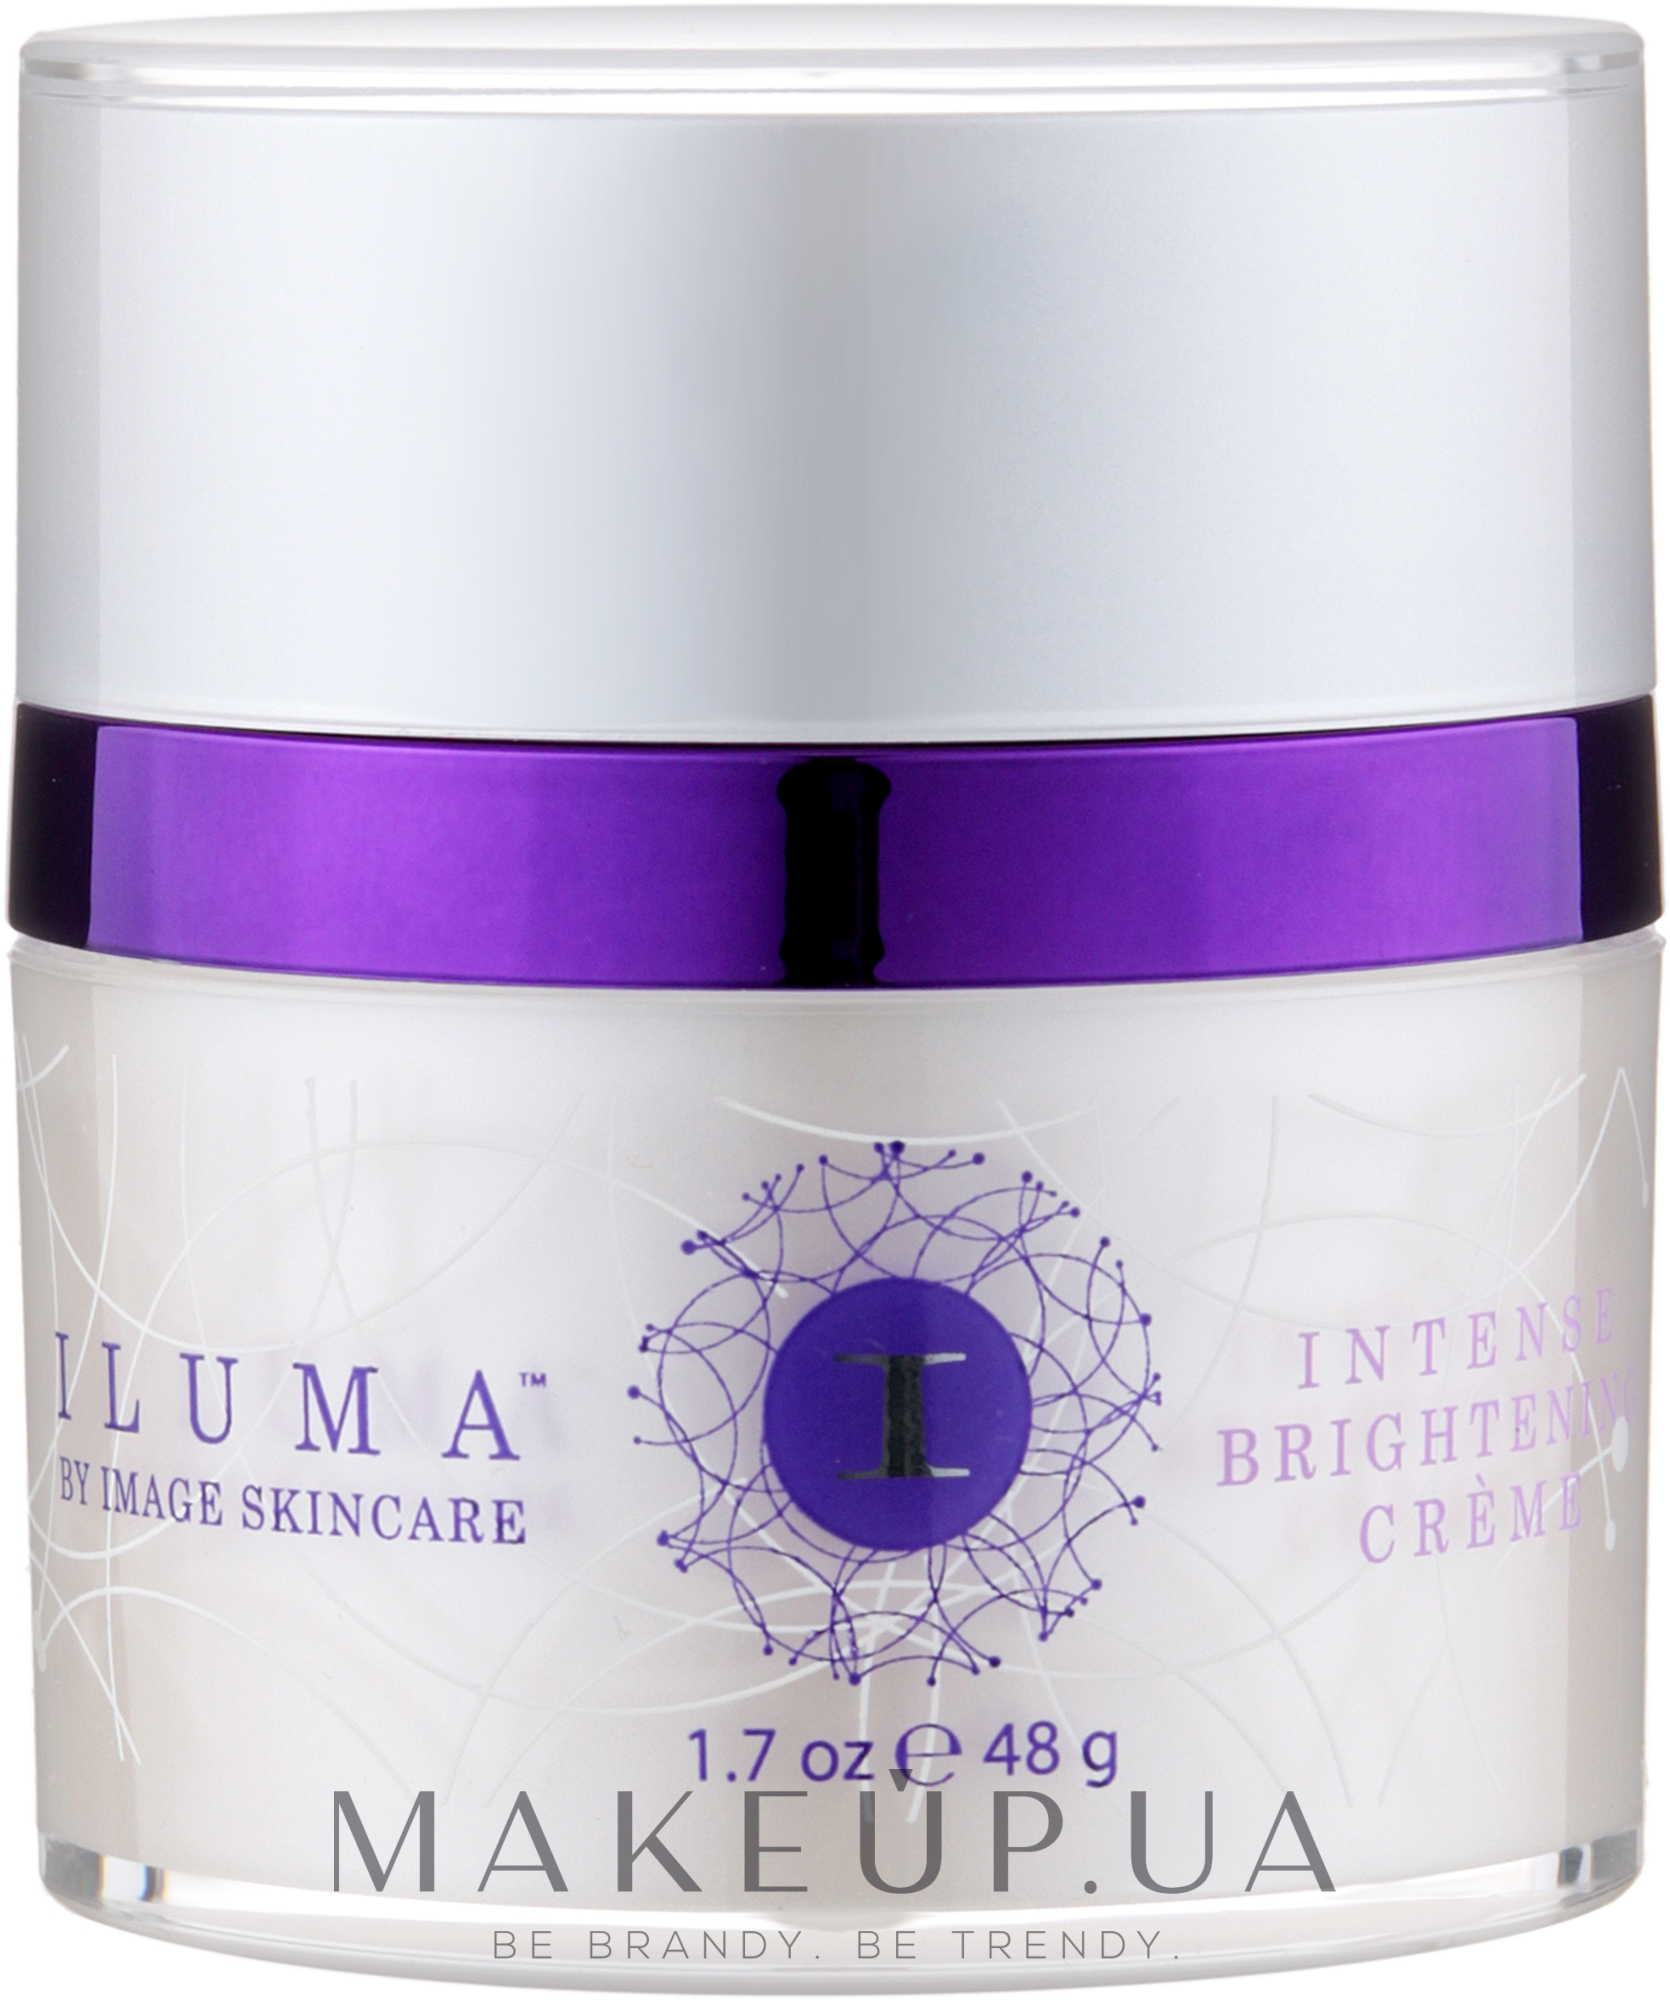 Интенсивный осветляющий крем - Image Skincare Iluma Intense Brightening Crème — фото 48g